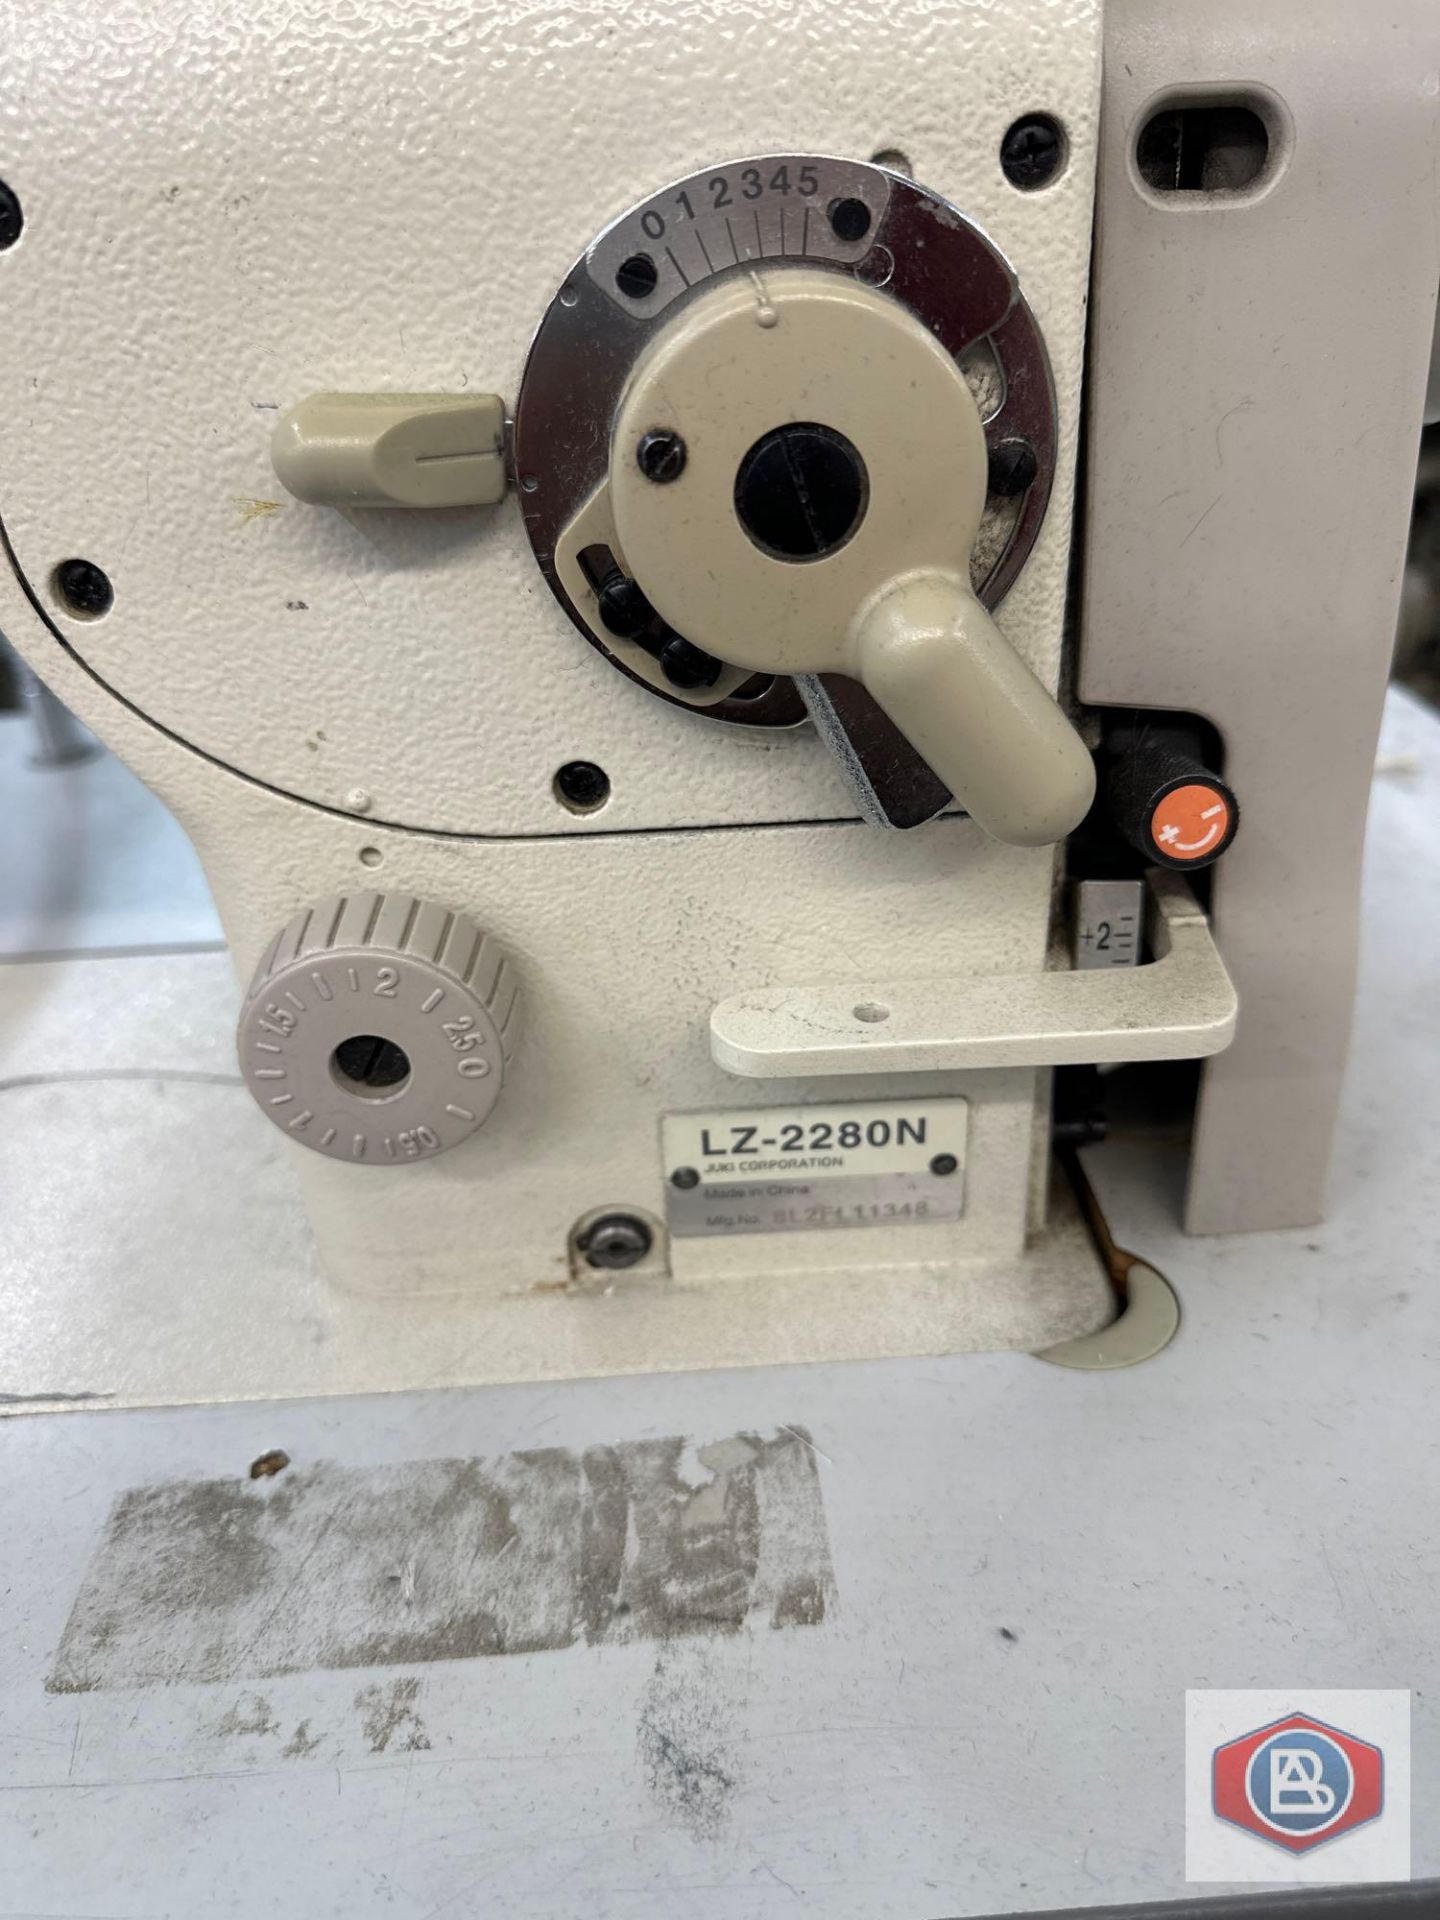 Juki Sewing Machine - Image 2 of 4